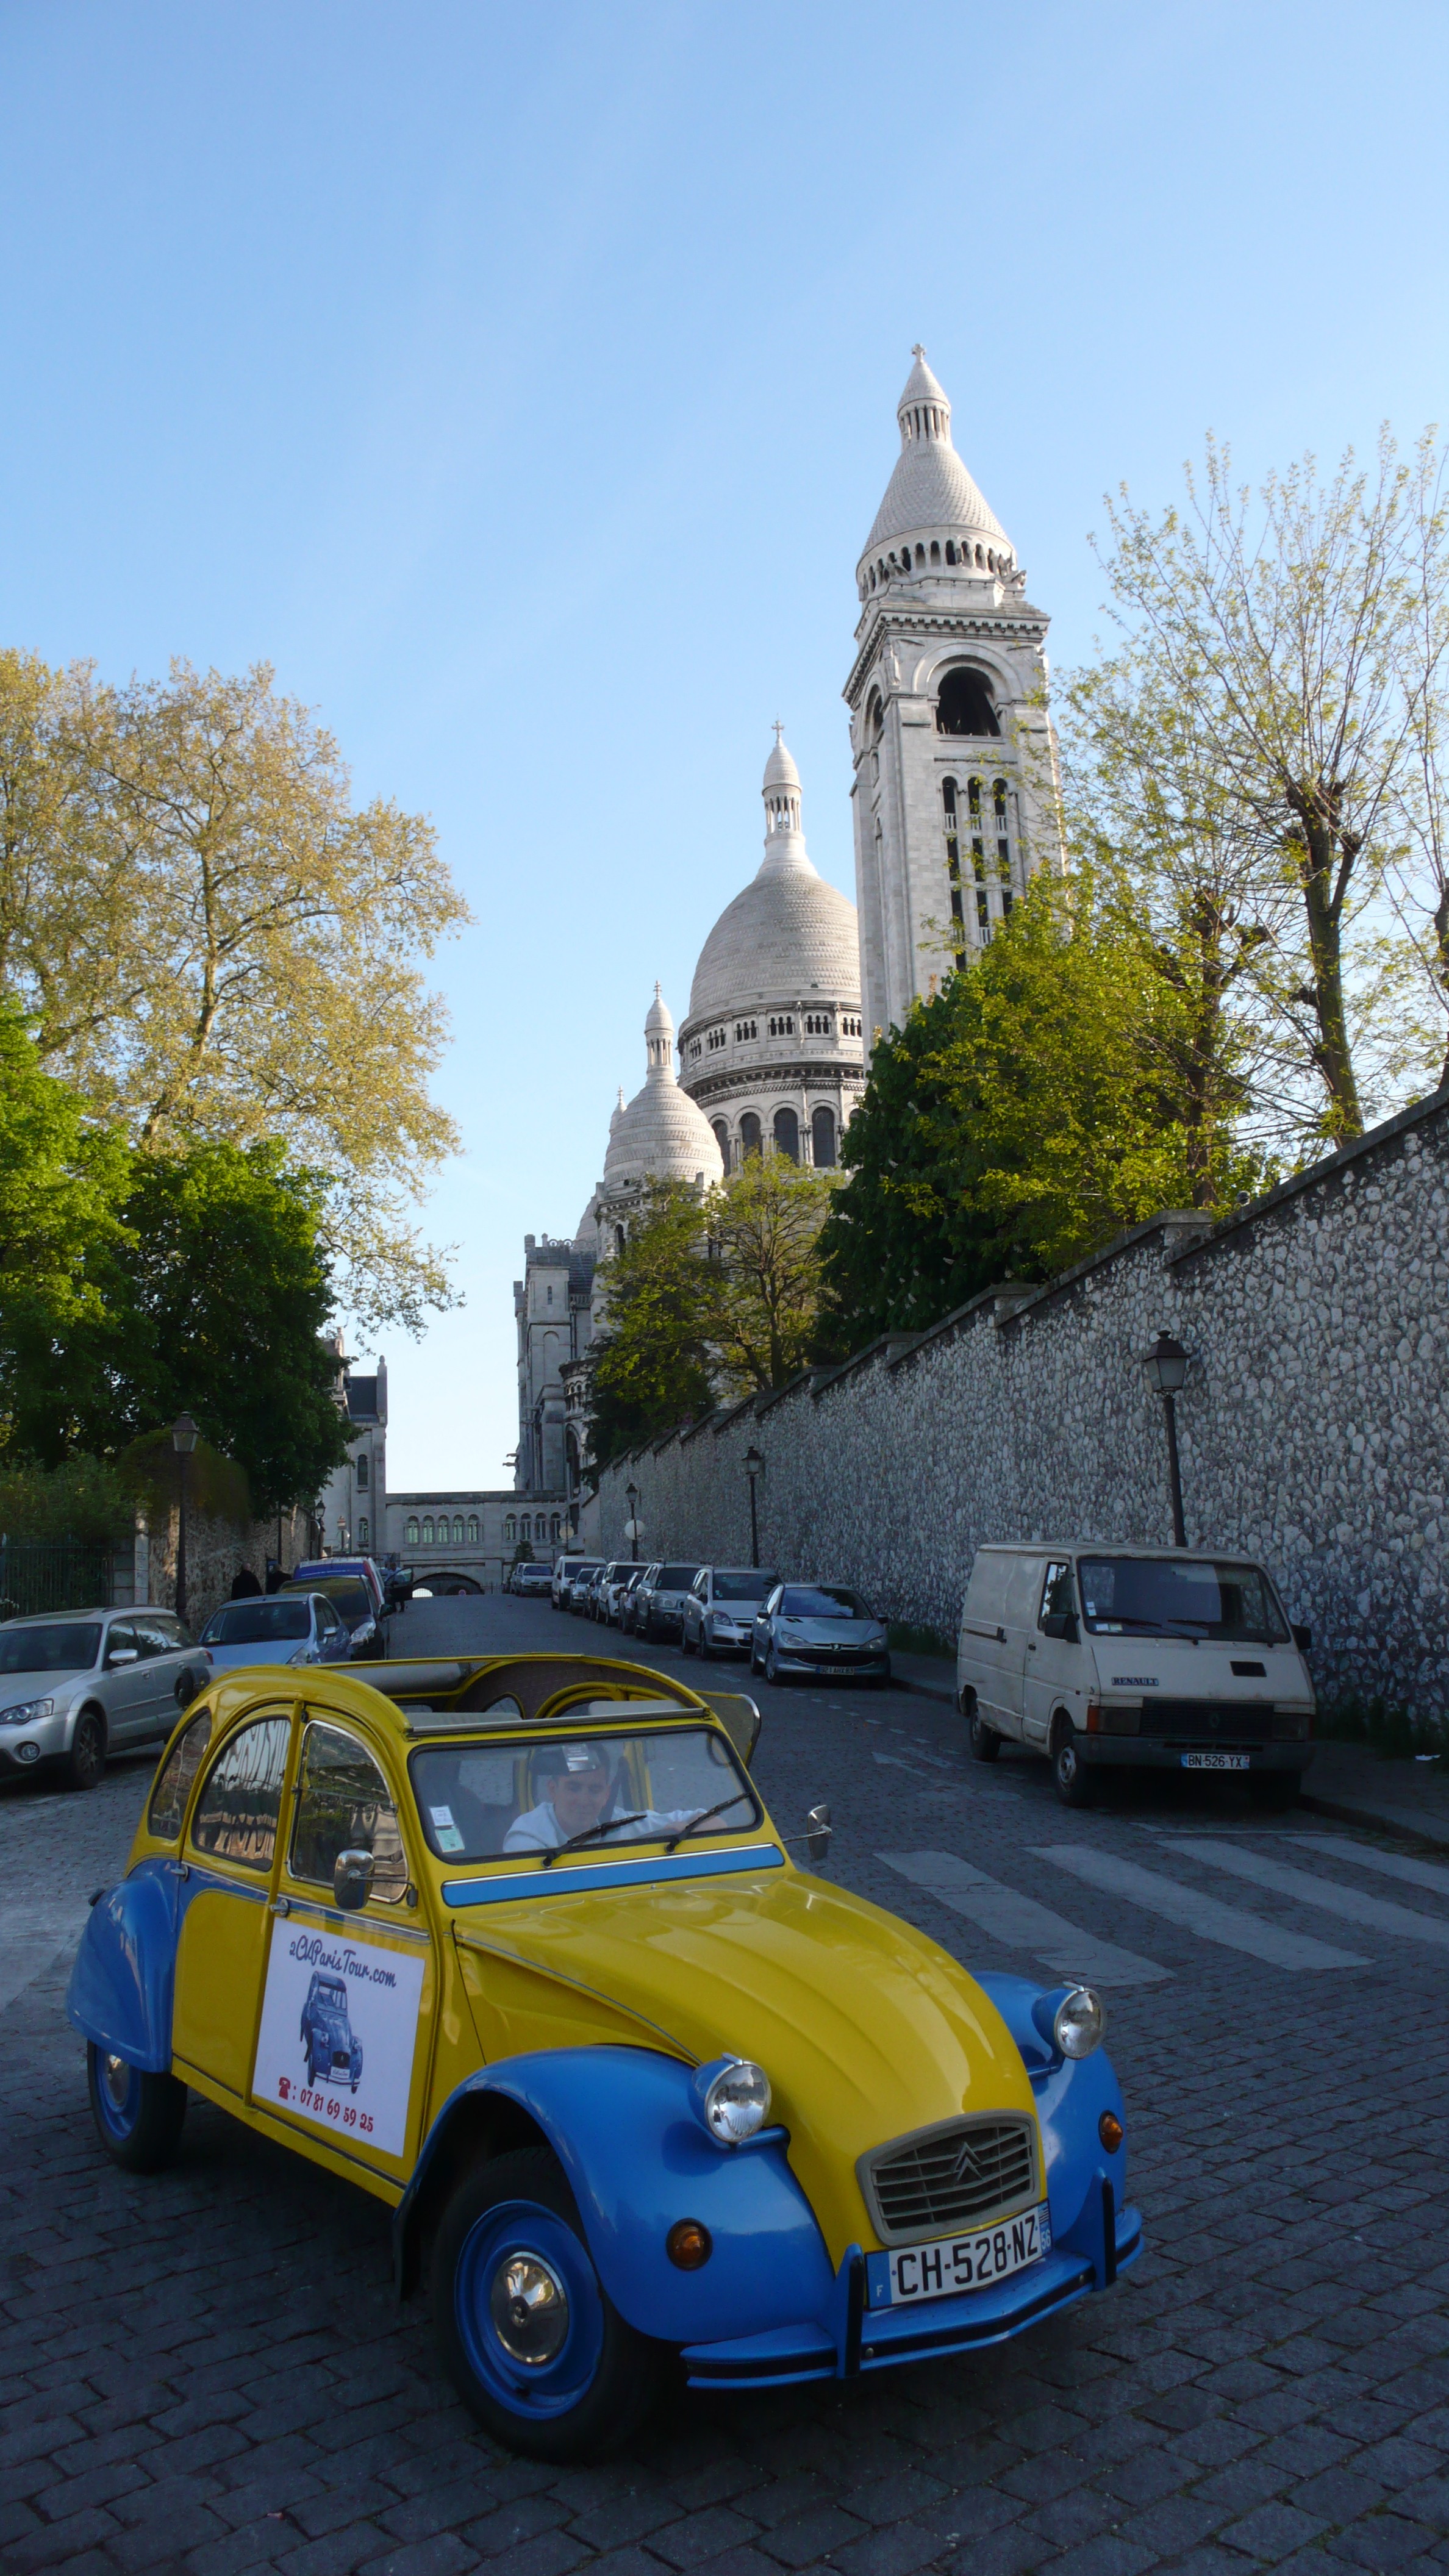 2CV Paris Tour : Visit Paris by 2CV! The Sacré-Coeur in background